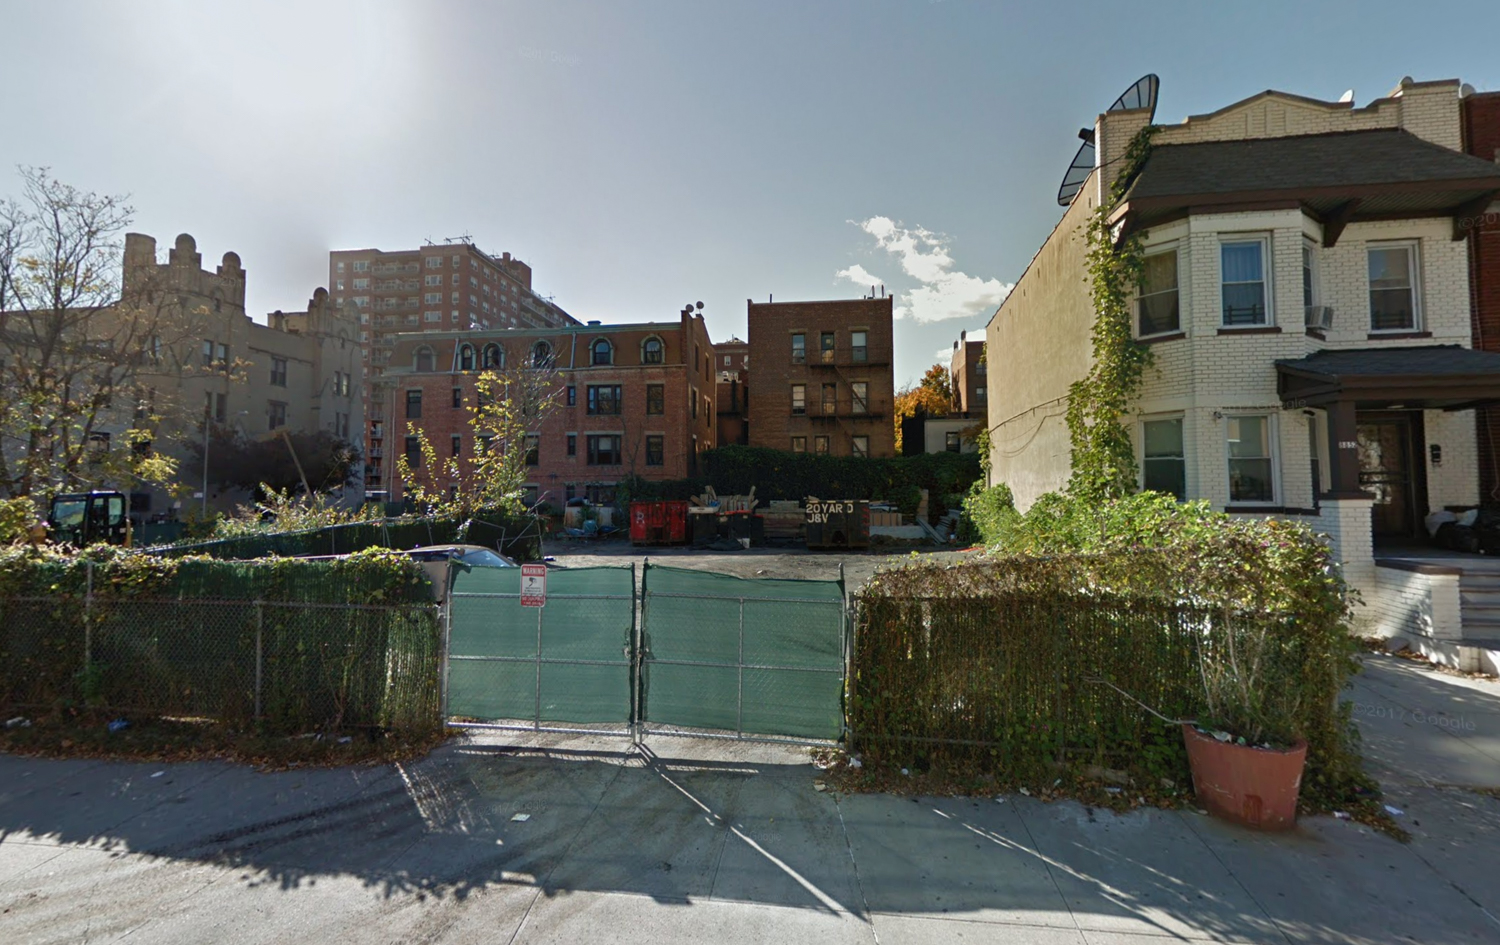 88-56 162nd Street, Queens, via Google Maps